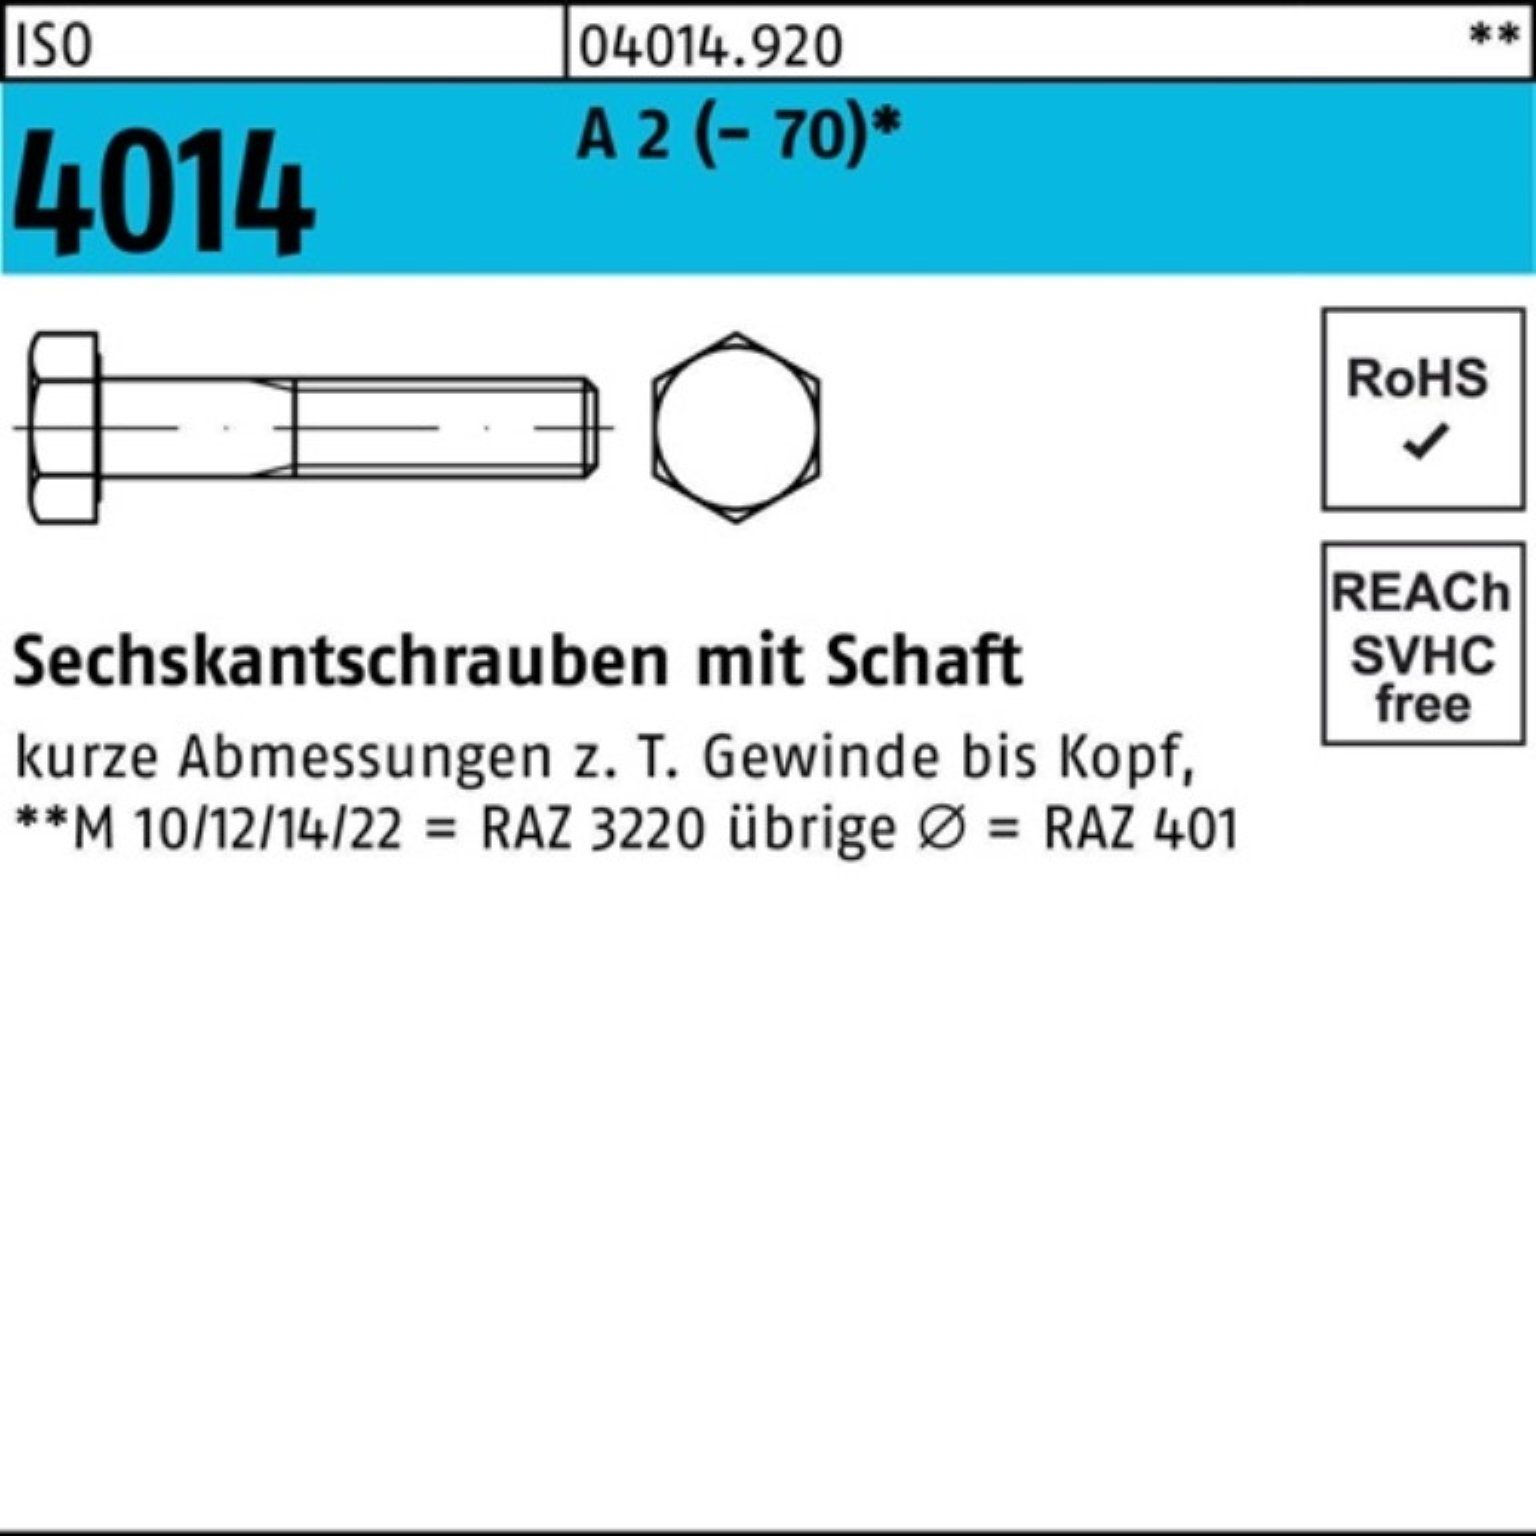 Pack Schaft ISO Bufab 100er 2 Sechskantschraube A Sechskantschraube M16x (70) St 1 4014 170